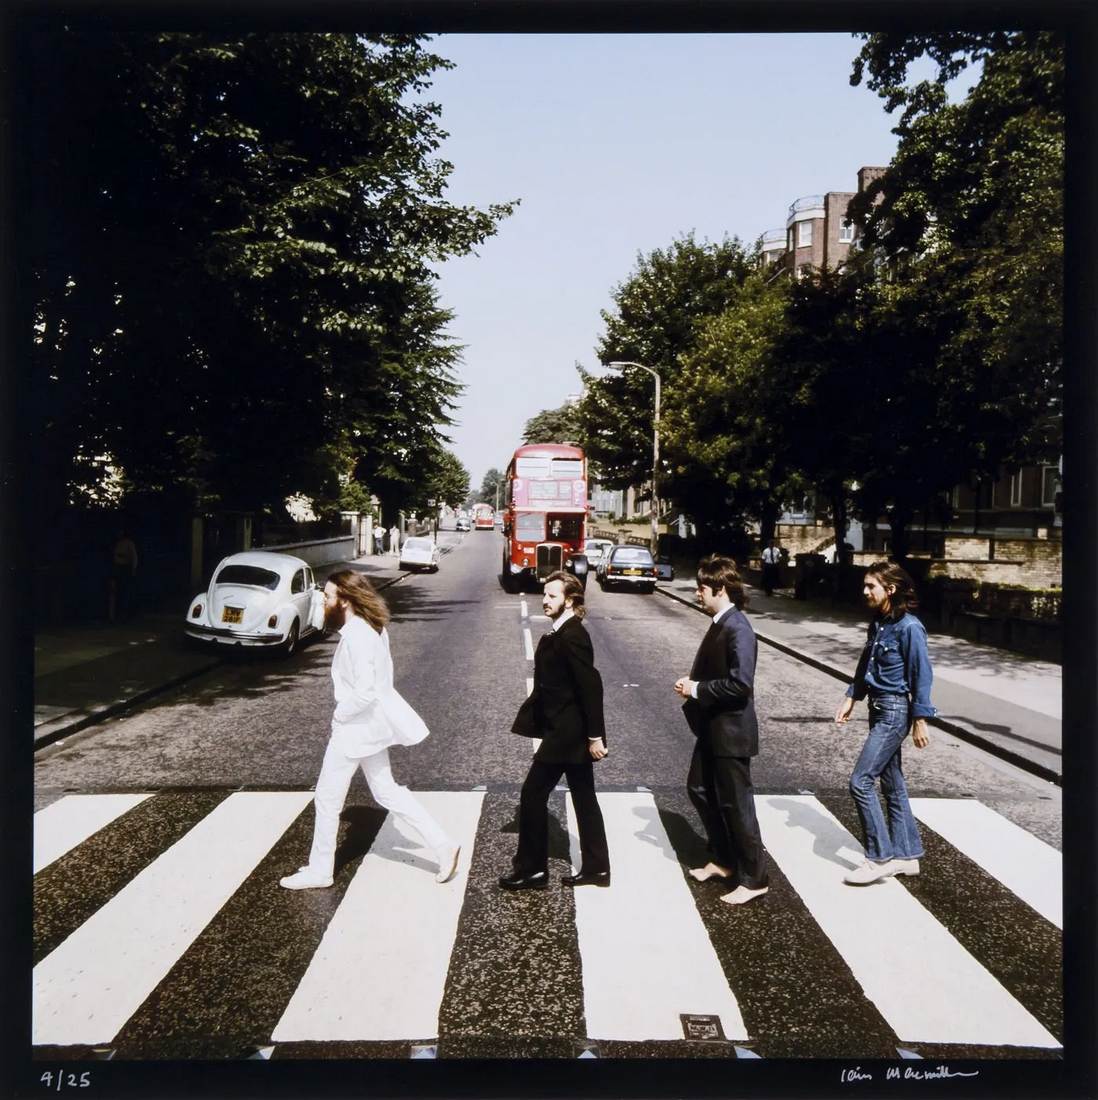 Die Beatles Abbey Road